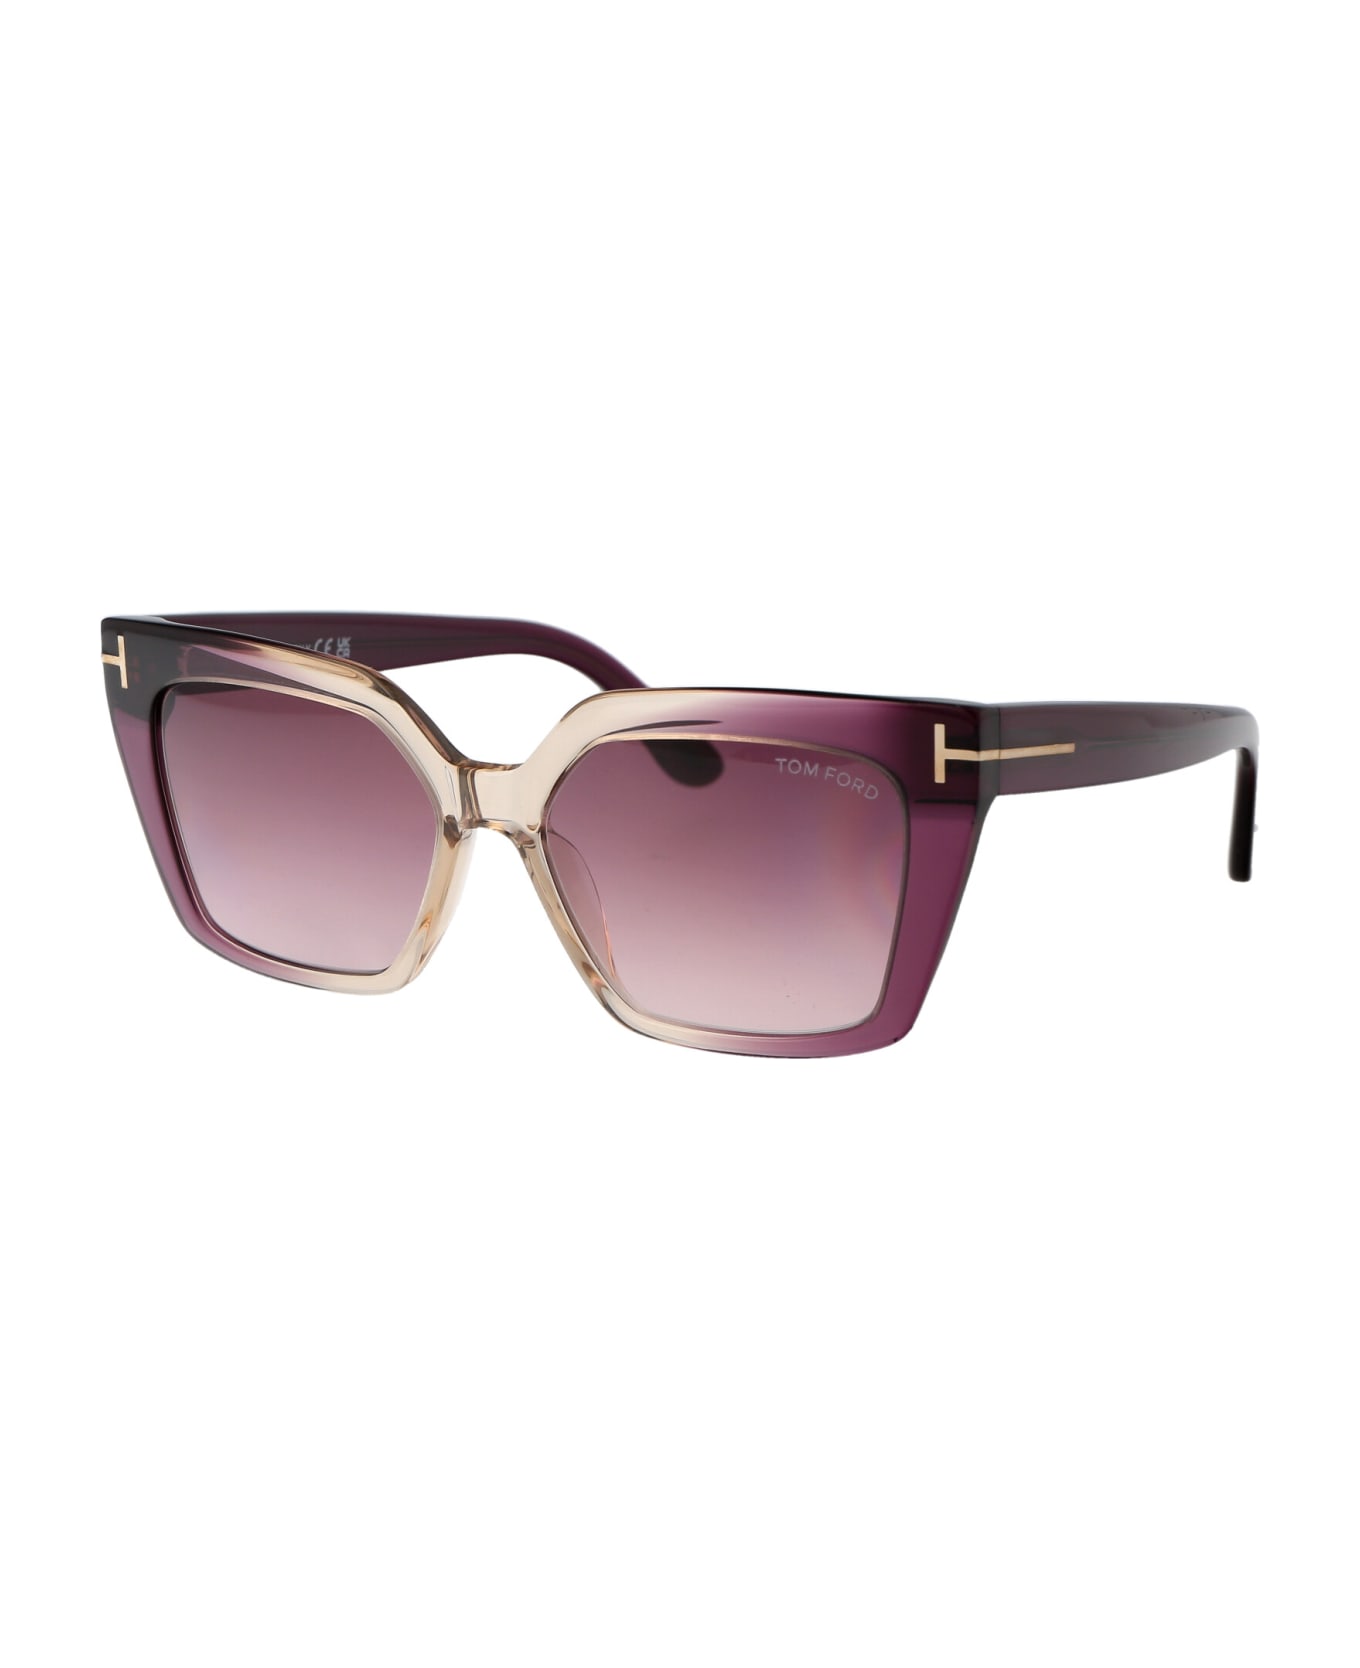 Tom Ford Eyewear Winona Sunglasses - 83Z Viola/Altro / Viola Grad E/O Specchiato